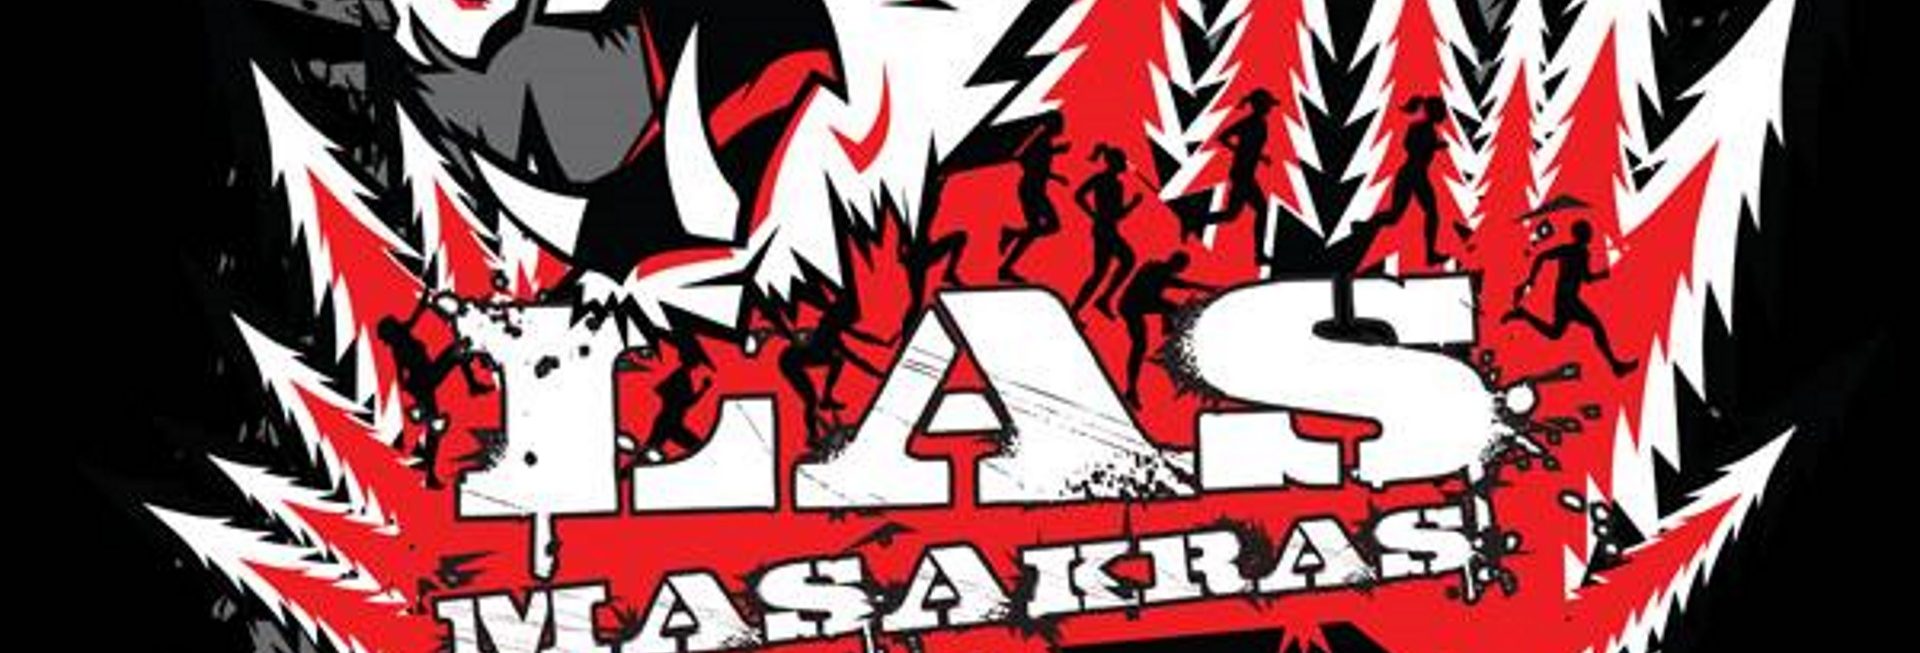 Plakat graficzny reklamujący imprezę III Bieg Las Masakras w Olsztynie 2020. Grafika przedstawia las w kolorze czerwonym, biegnących ludzi na tle lasu oraz napisy reklamujące imprezę.      